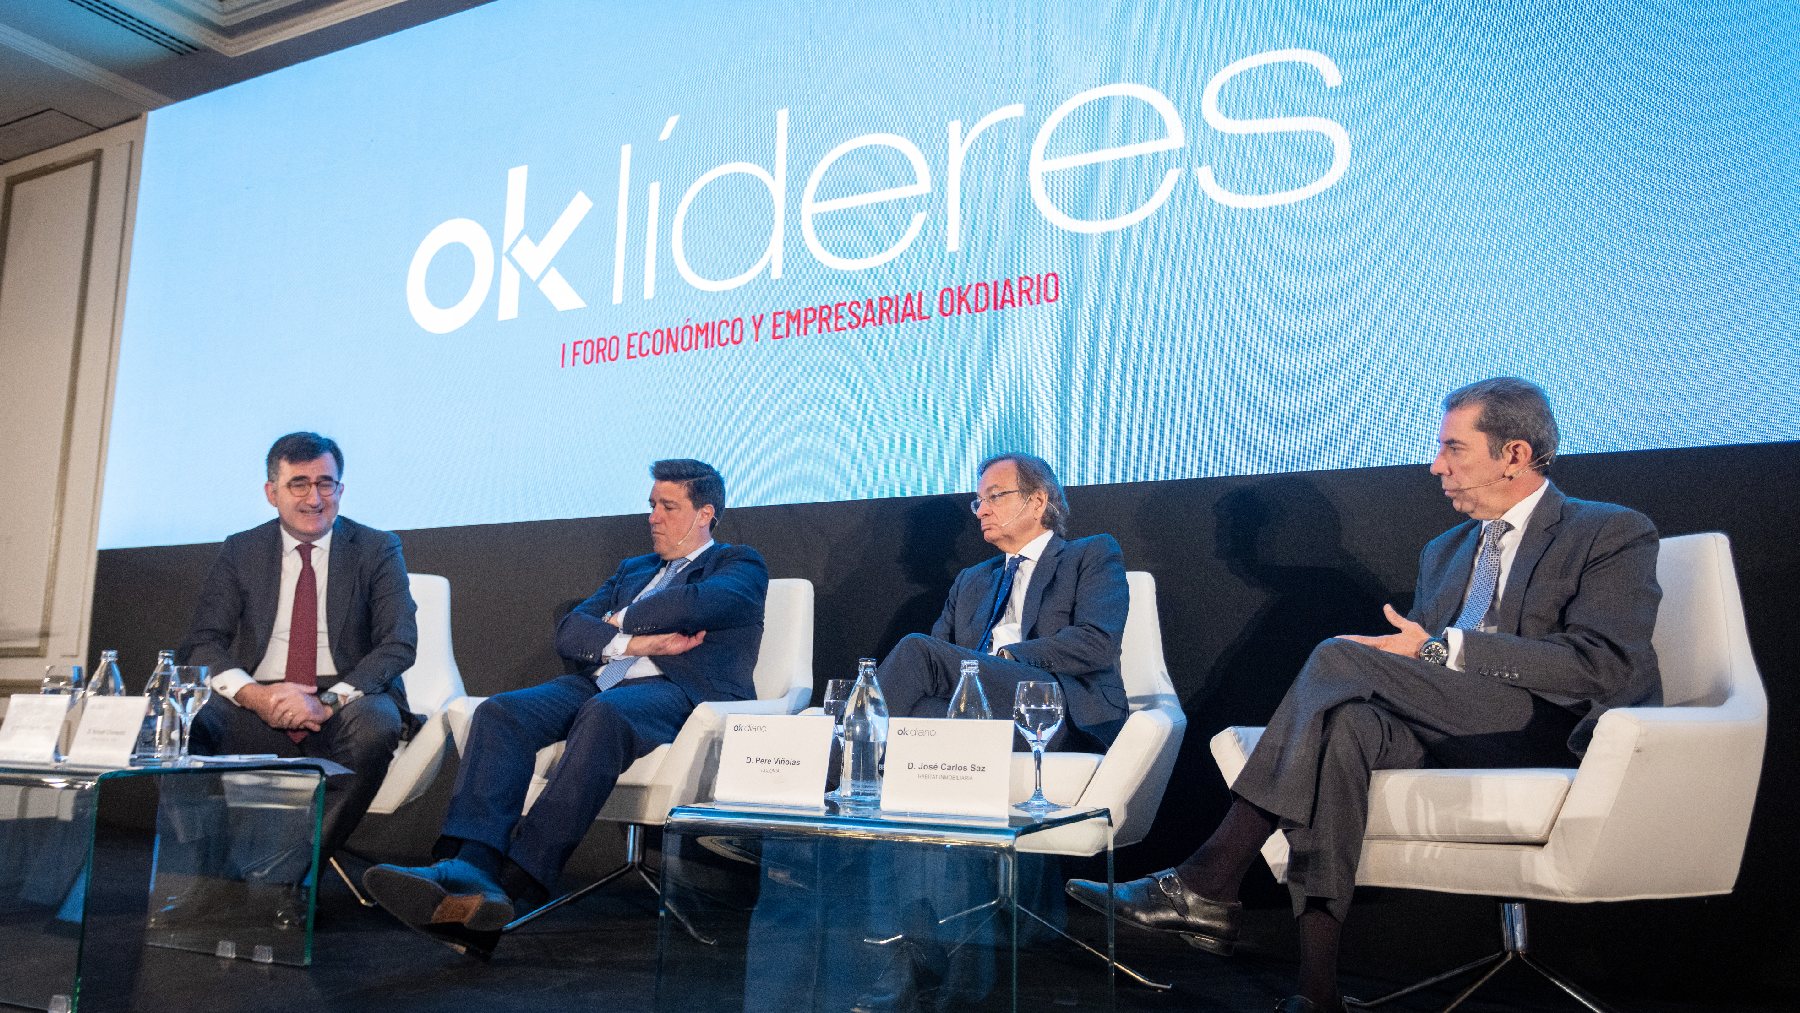 Alberto Valls, Ismael Clemente, Pere Viñolas y José Carlos Saz.